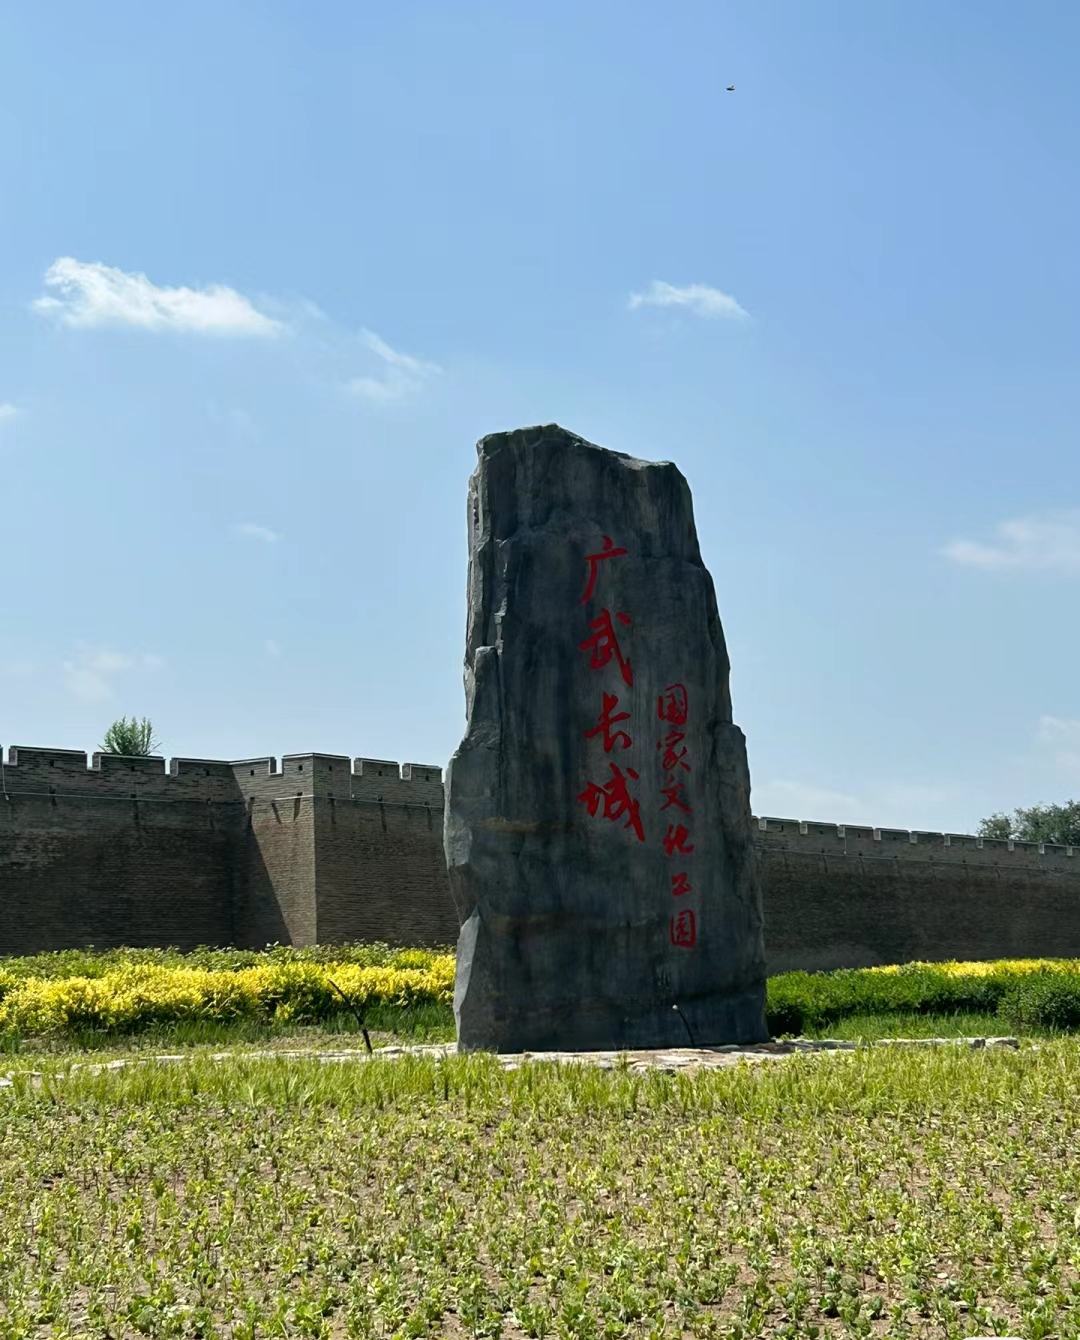 旧广武村坐落在始建于战国时代赵国的旧广武城中，可谓名副其实的“城中村”。据《史记》记载，秦庄襄王二年